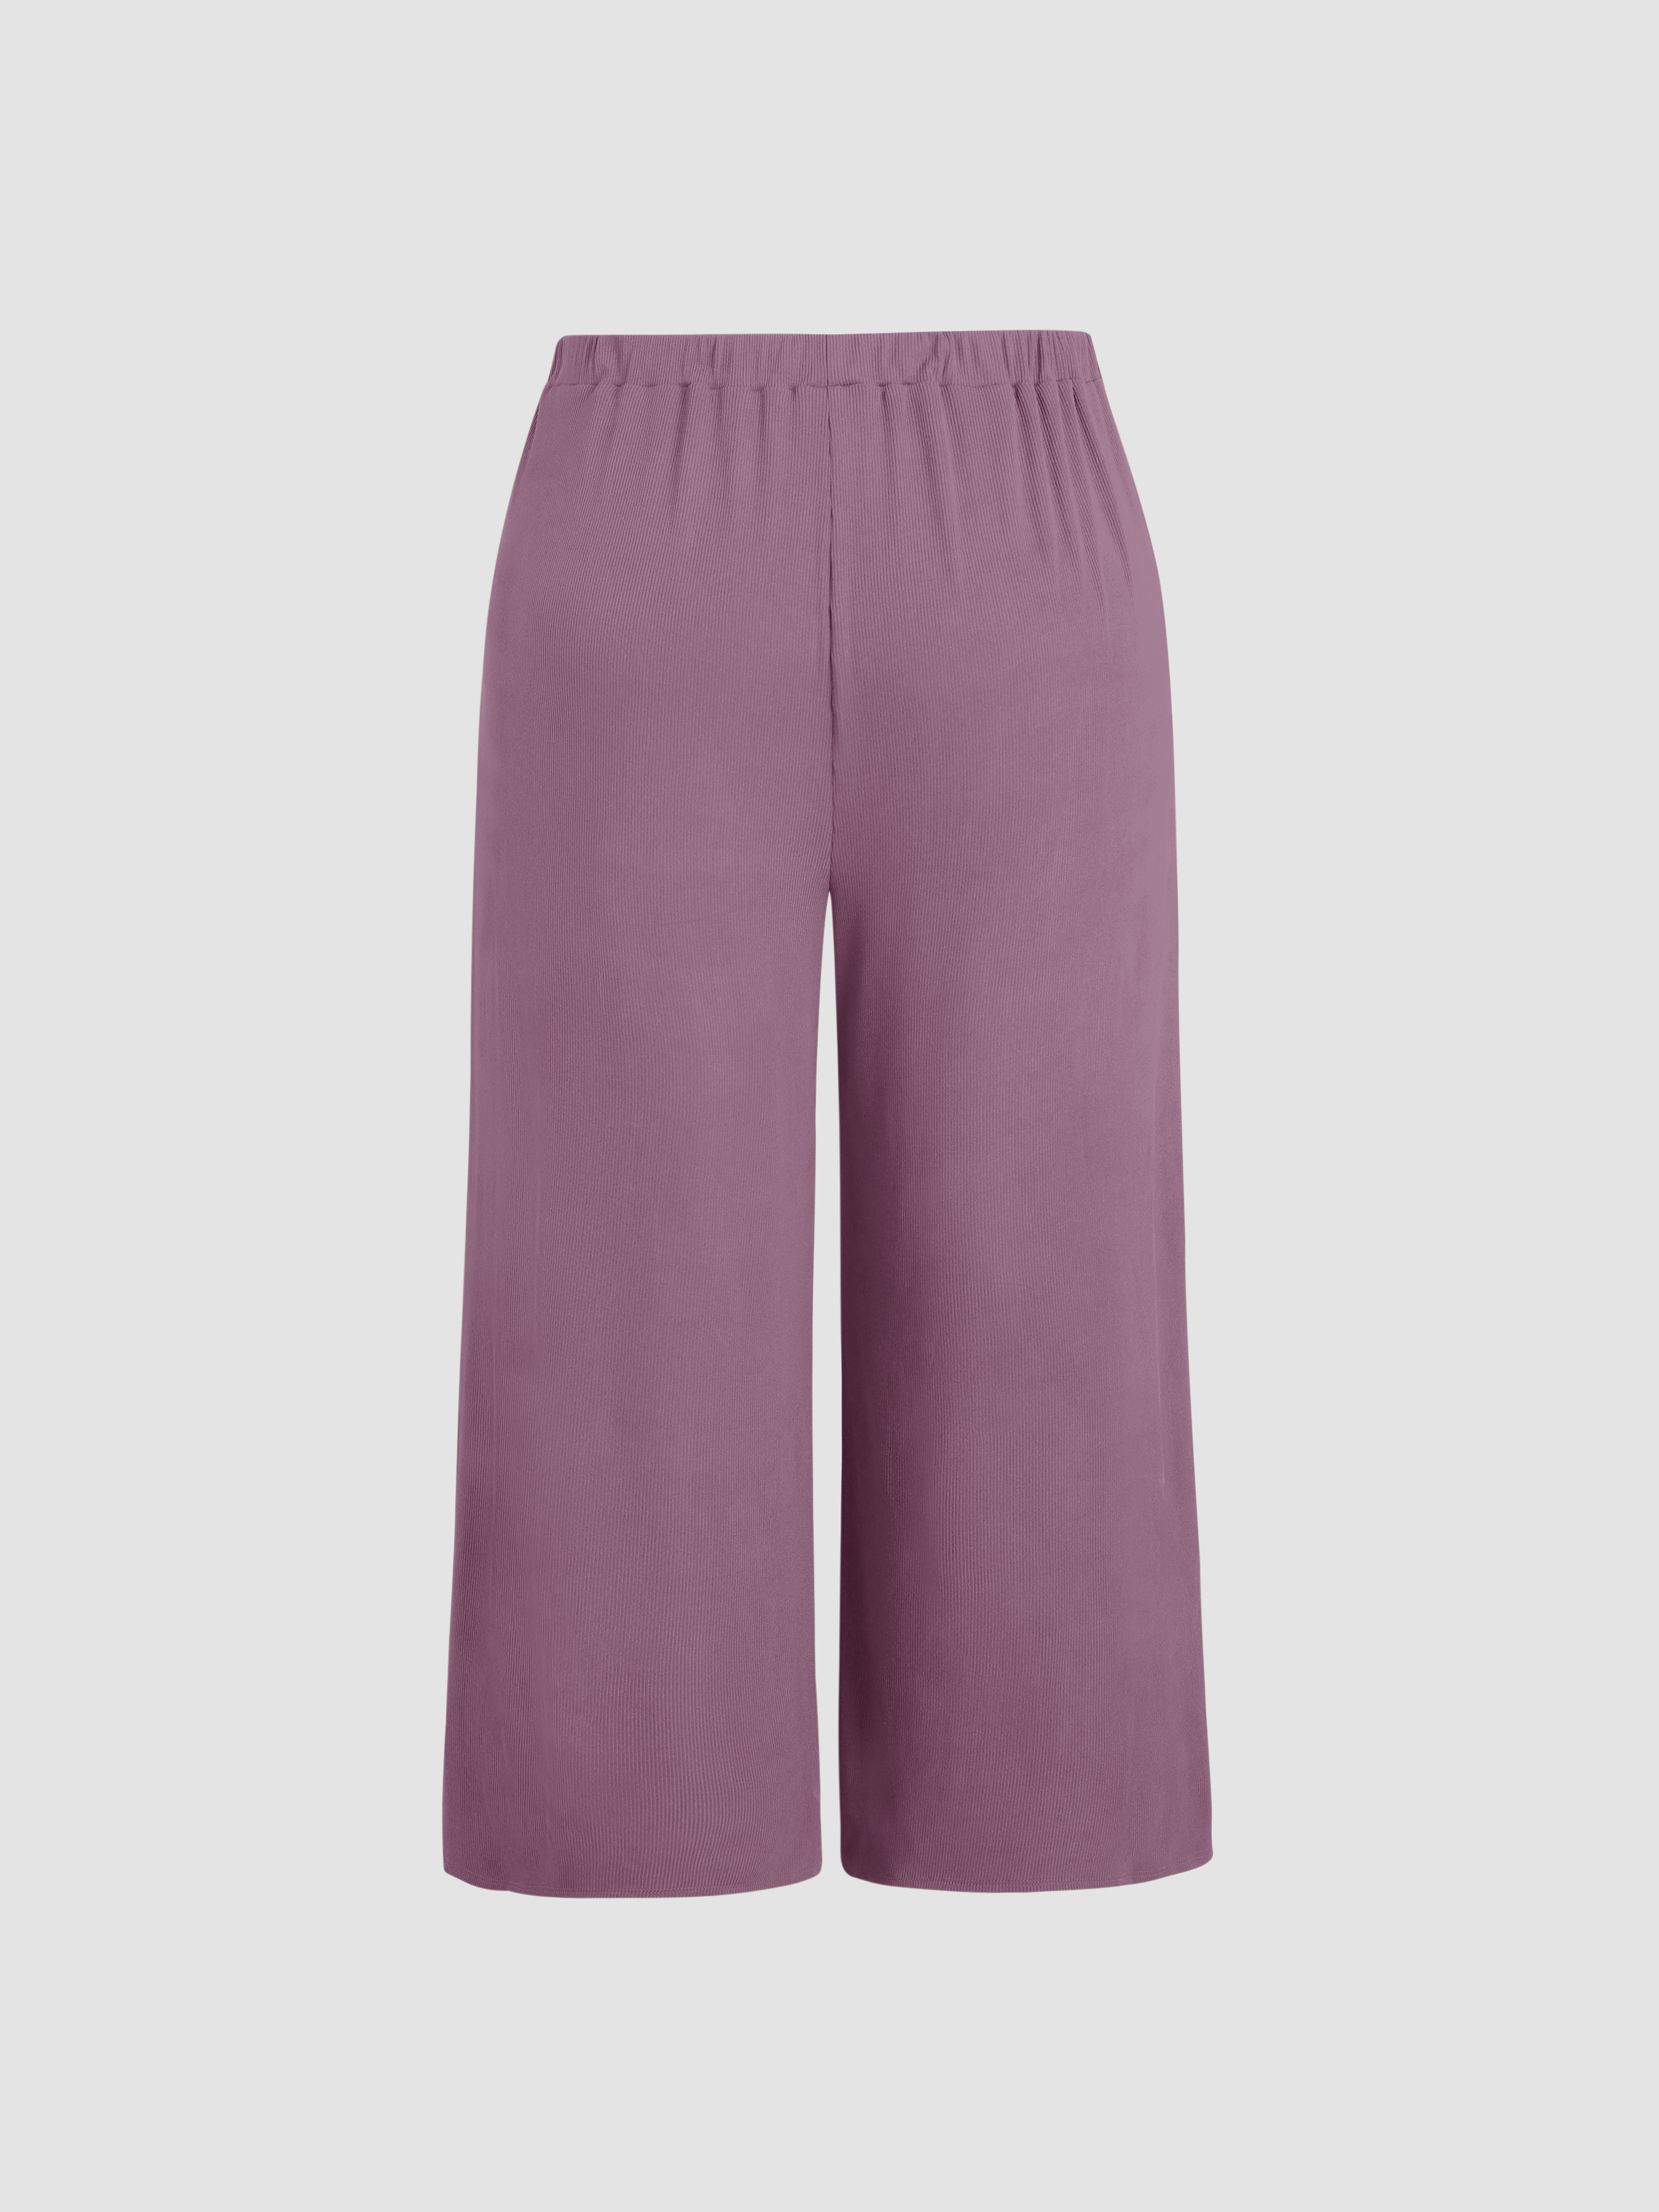 Printed Culottes Crop Pants Size M/L Purple Crinkle Rayon Wide Leg - Ruby  Lane